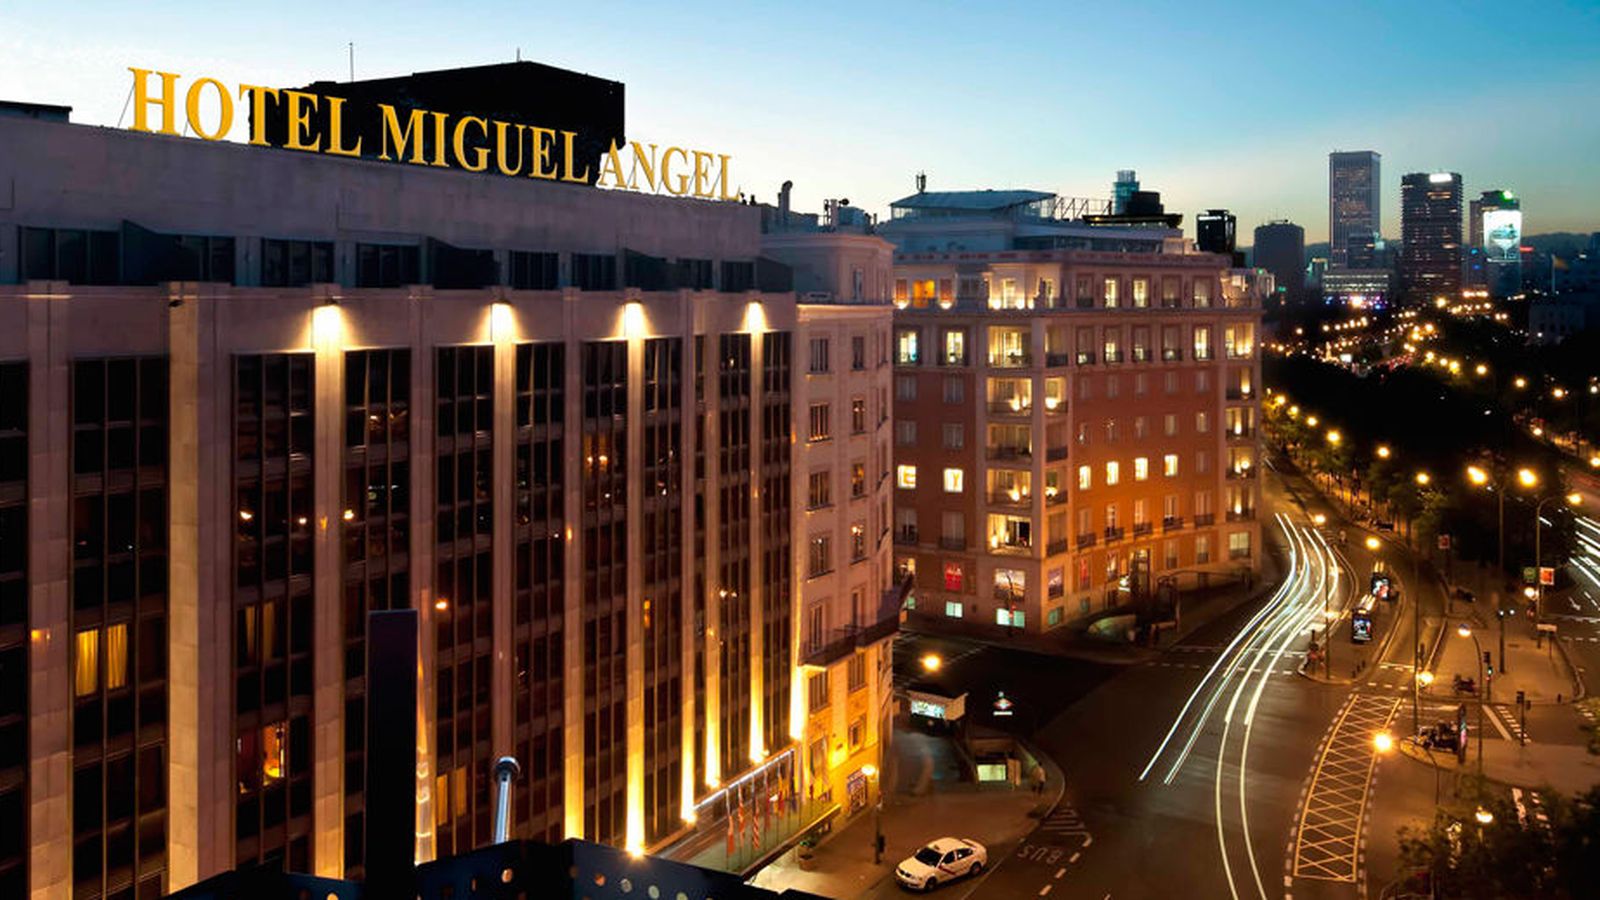 Foto: Panorámica del hotel Miguel Ángel sobre el Paseo de la Castellana